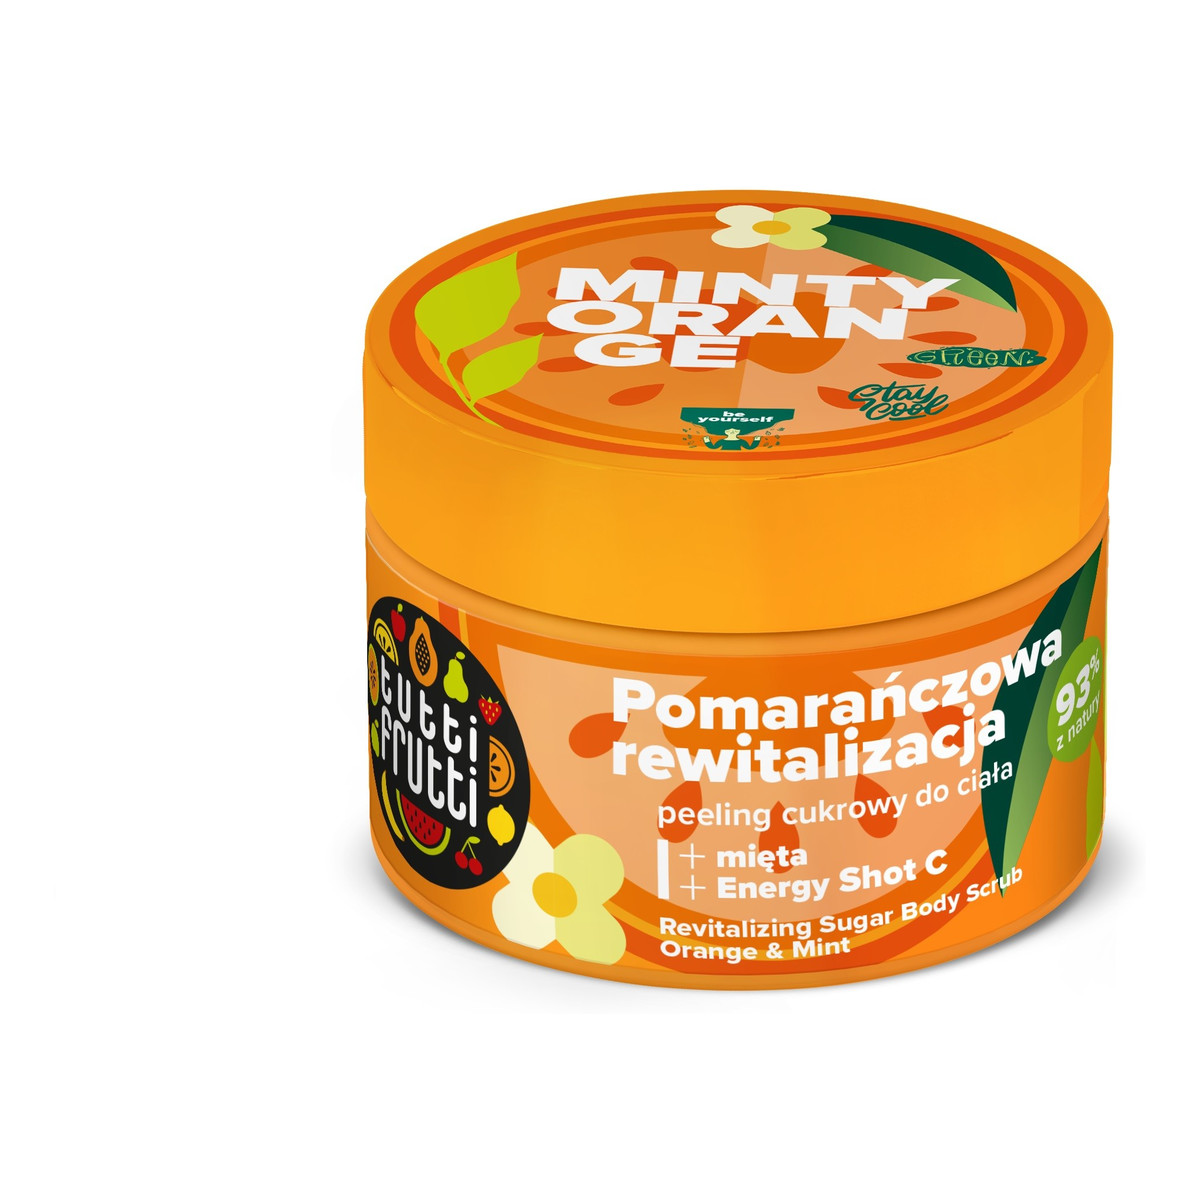 Farmona Tutti Frutti Rewitalizujący Peeling cukrowy do ciała Pomarańcza i Mięta + Energy Shot C 300ml